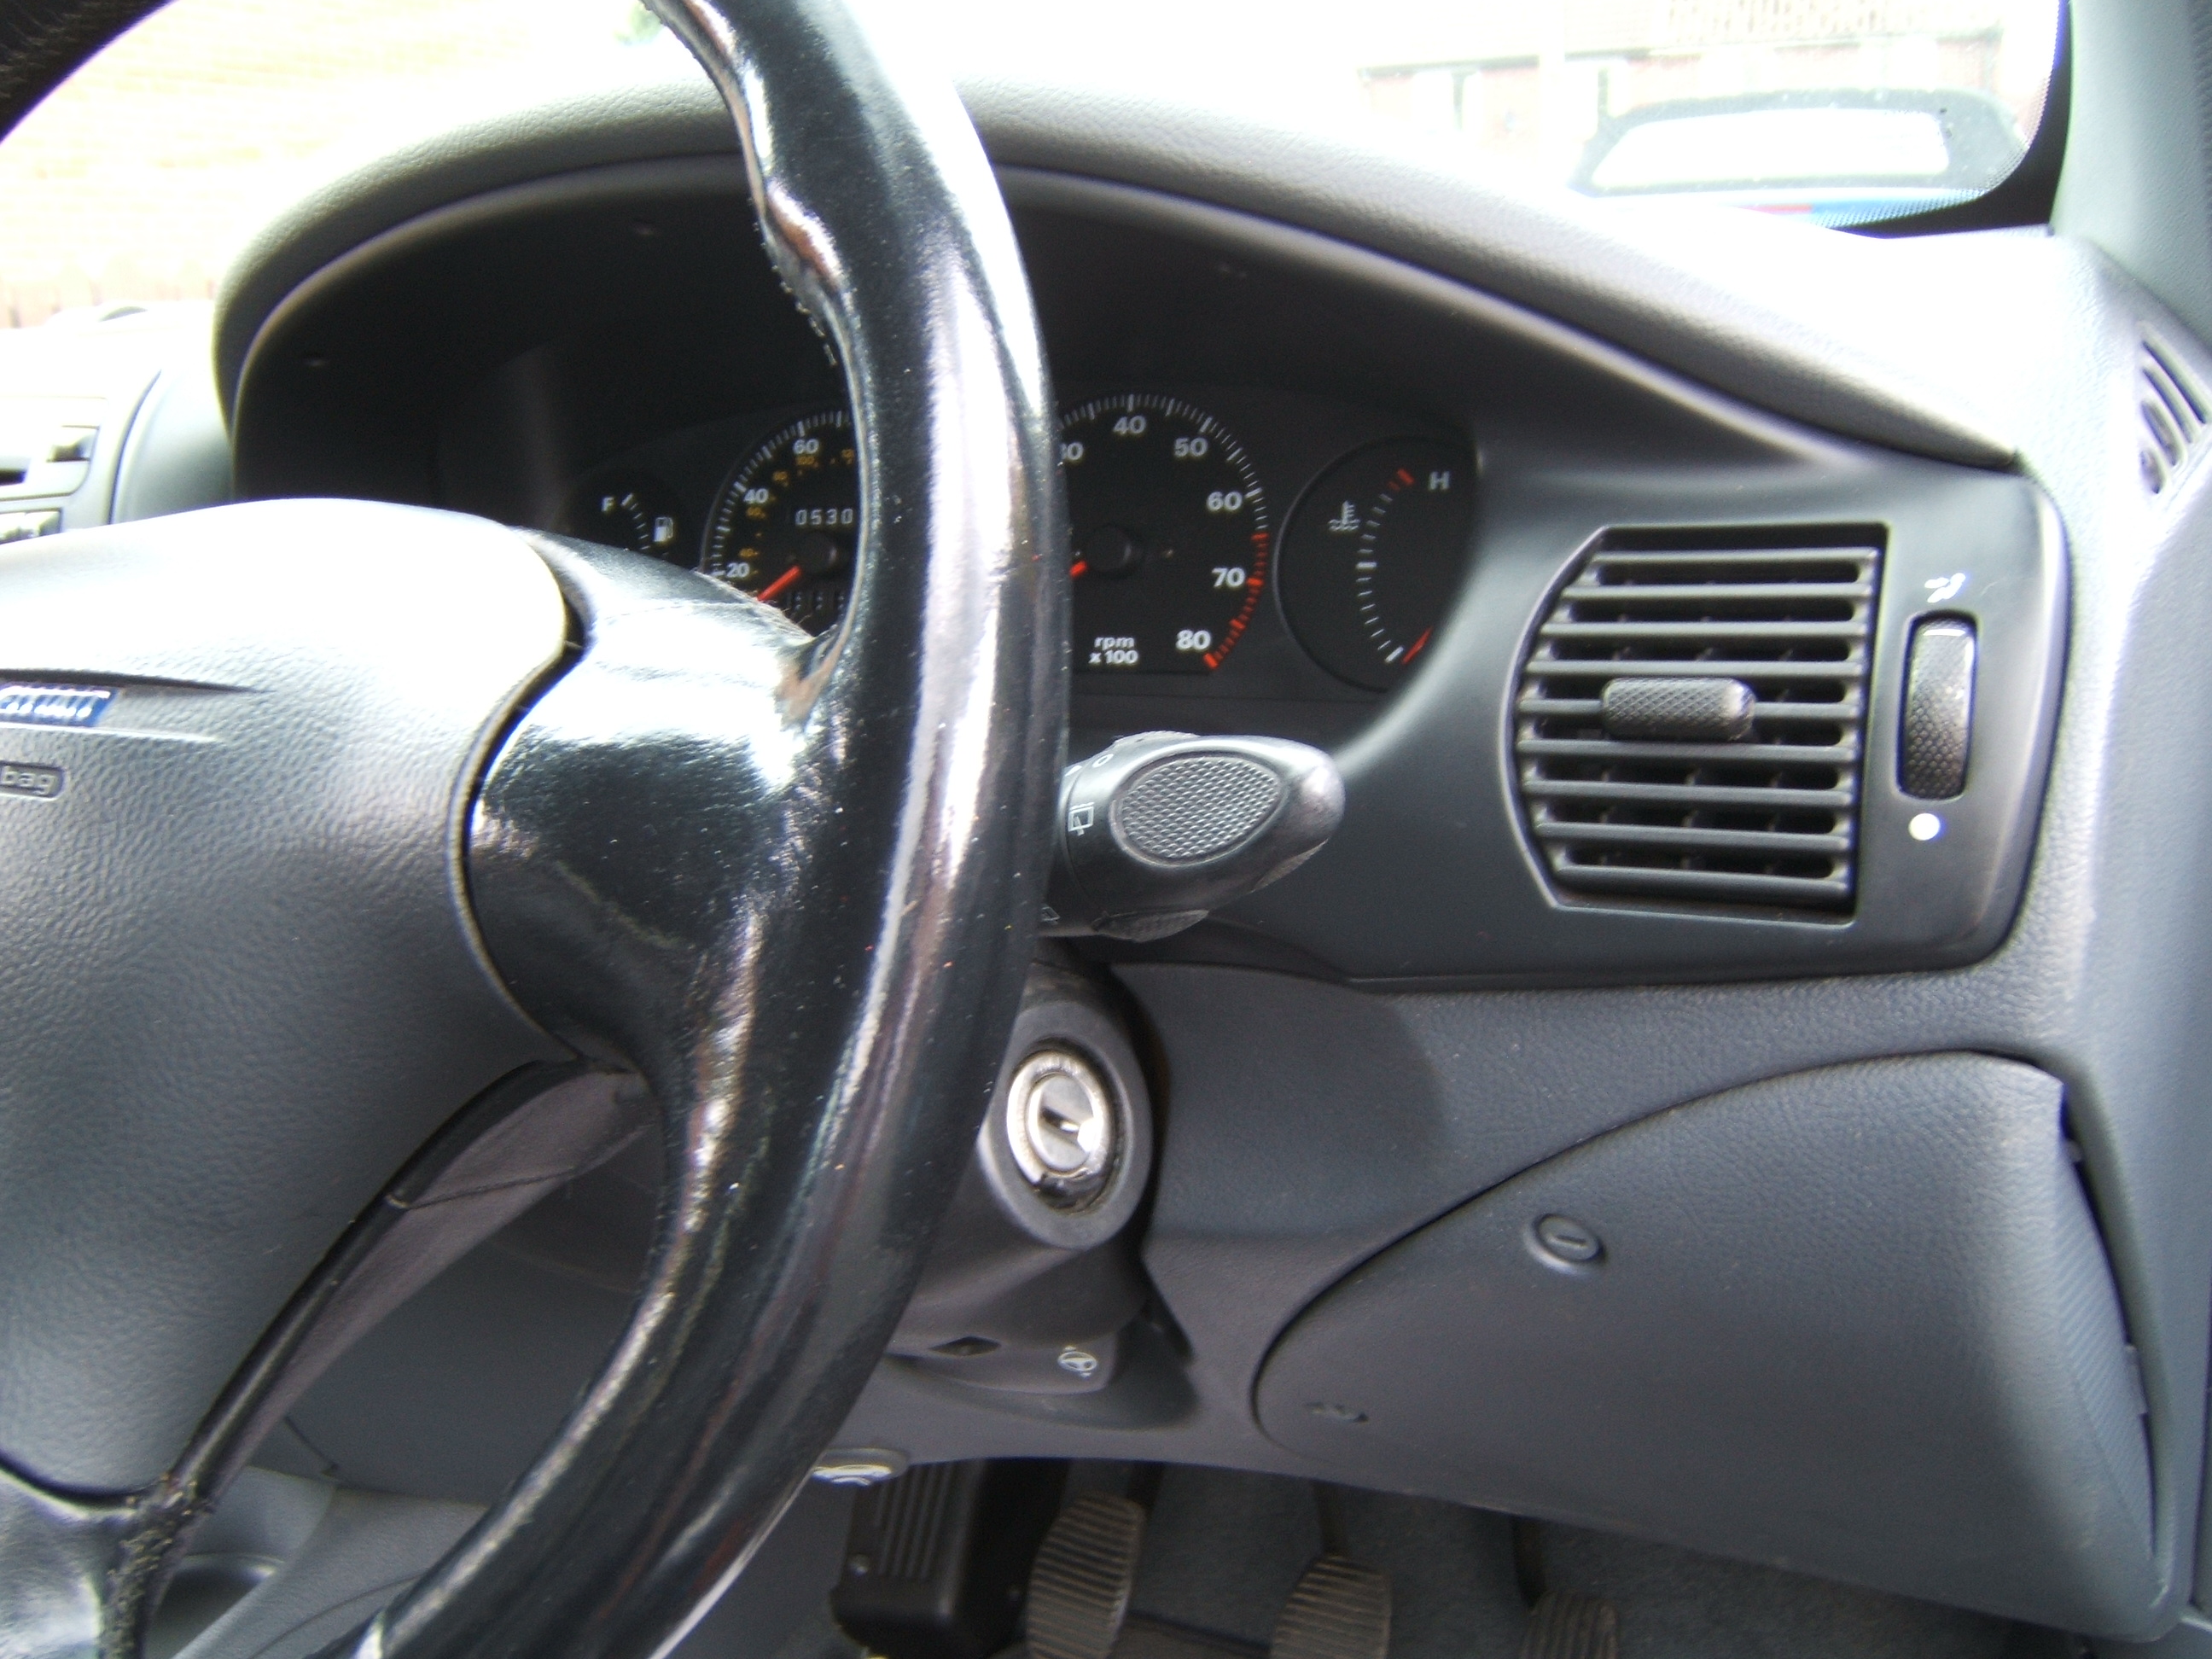 Fiat Bravo Clock, Dials, Instrument Surround Black Grey.